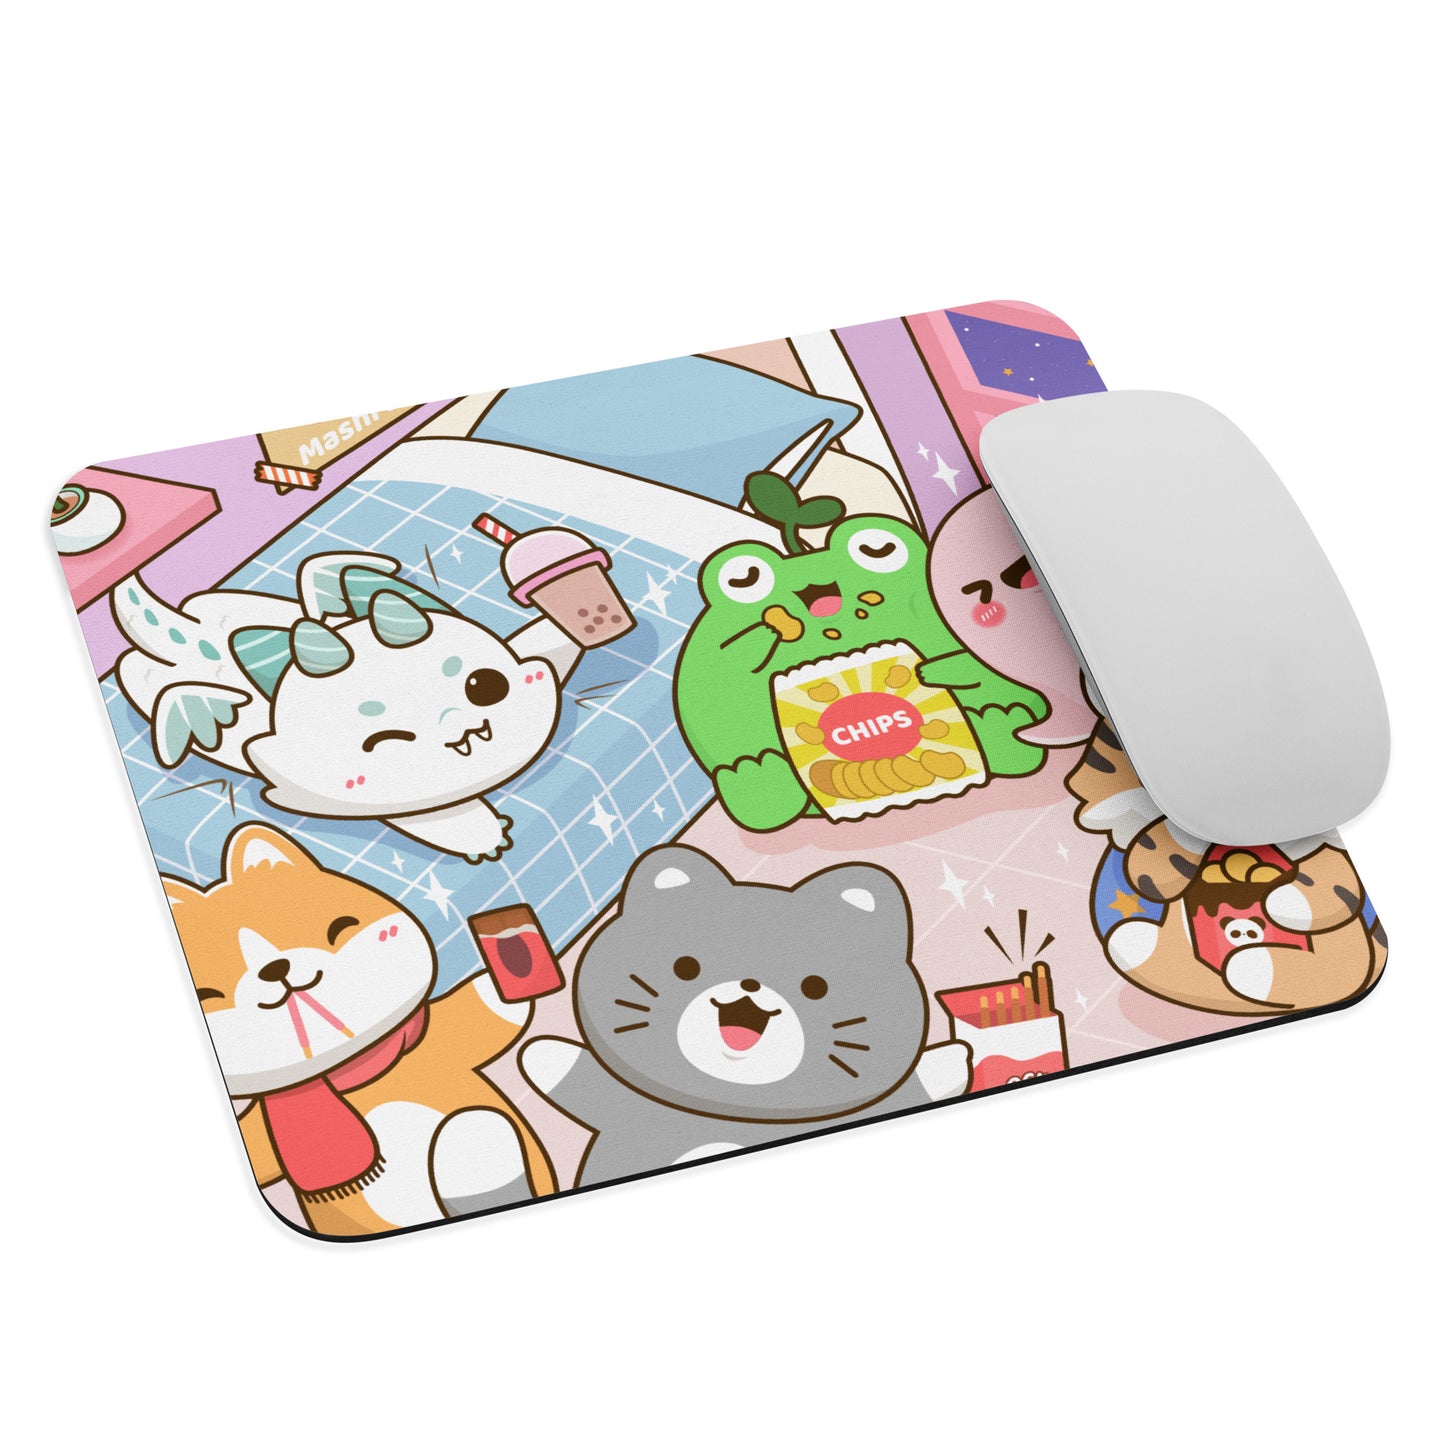 Mashi Character Mouse pad